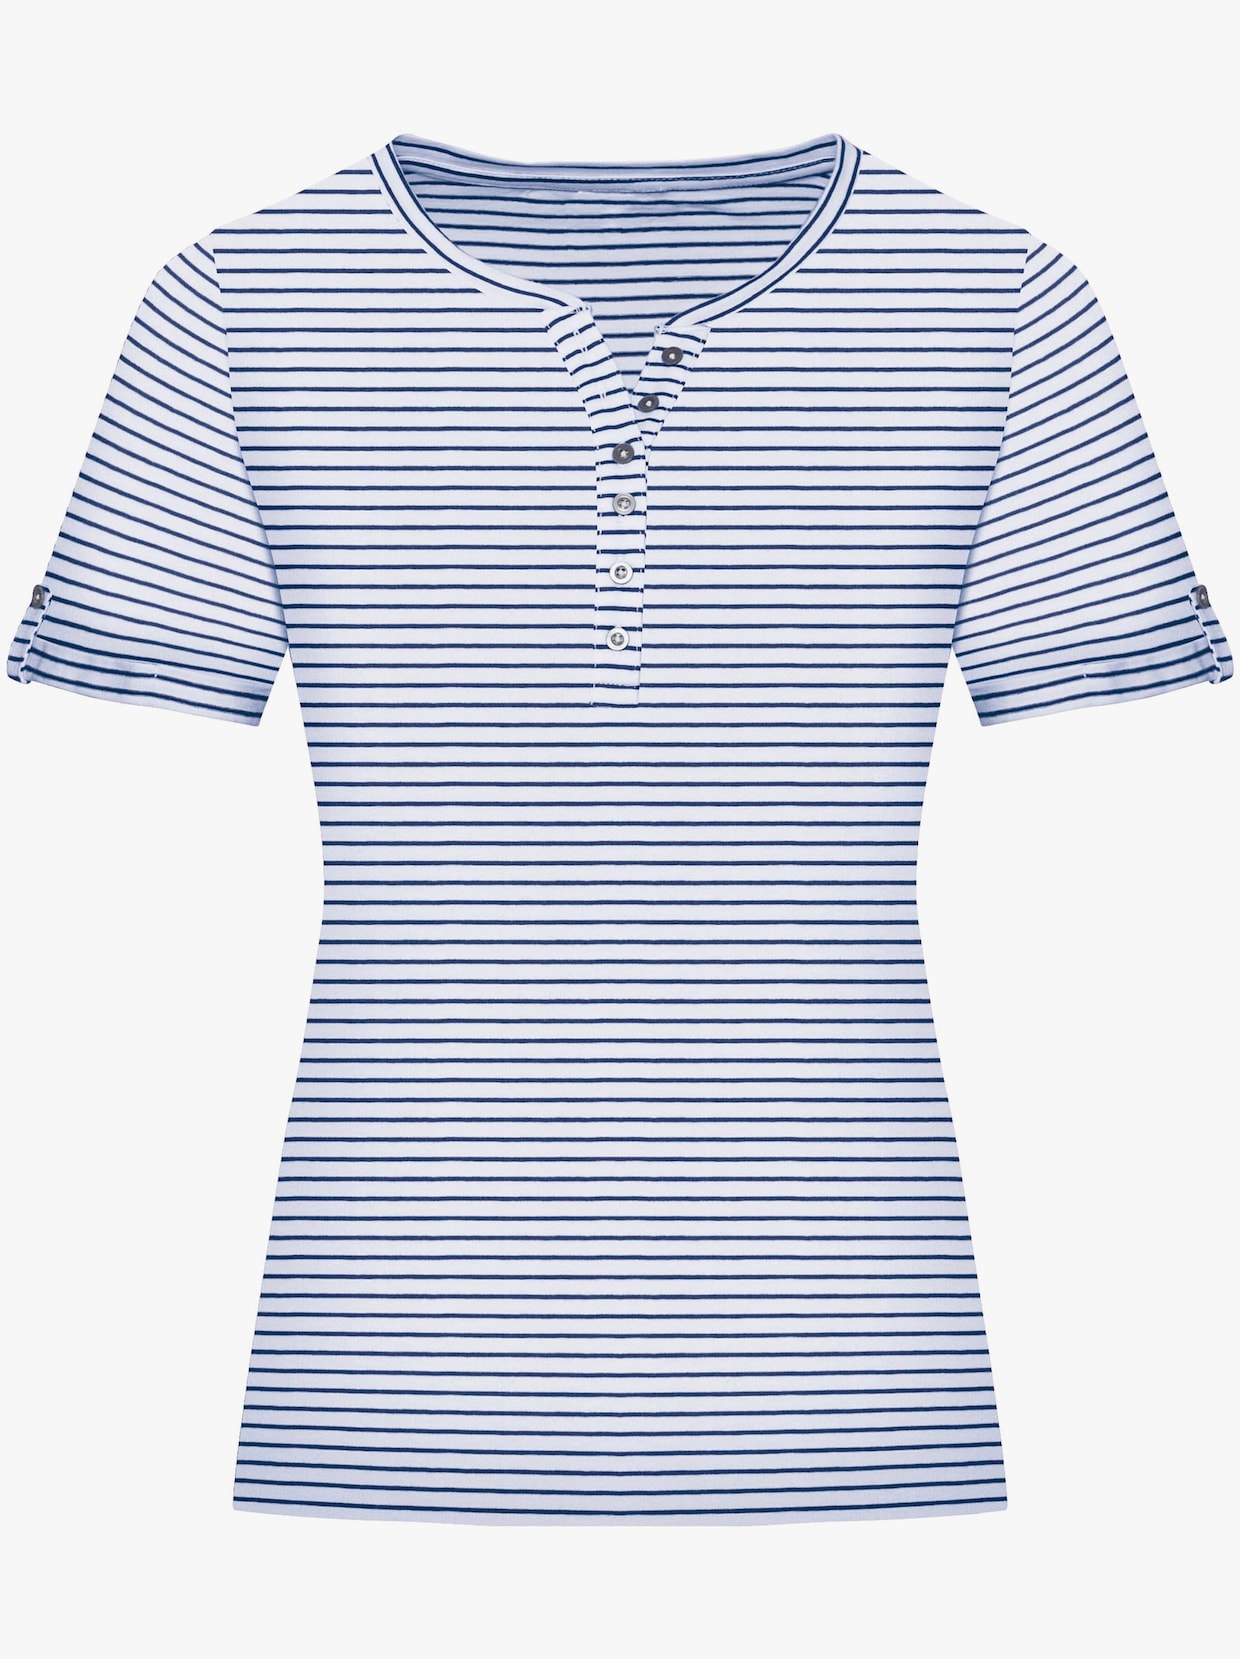 Tričko s krátkým rukávem - námořnická modrá-proužek